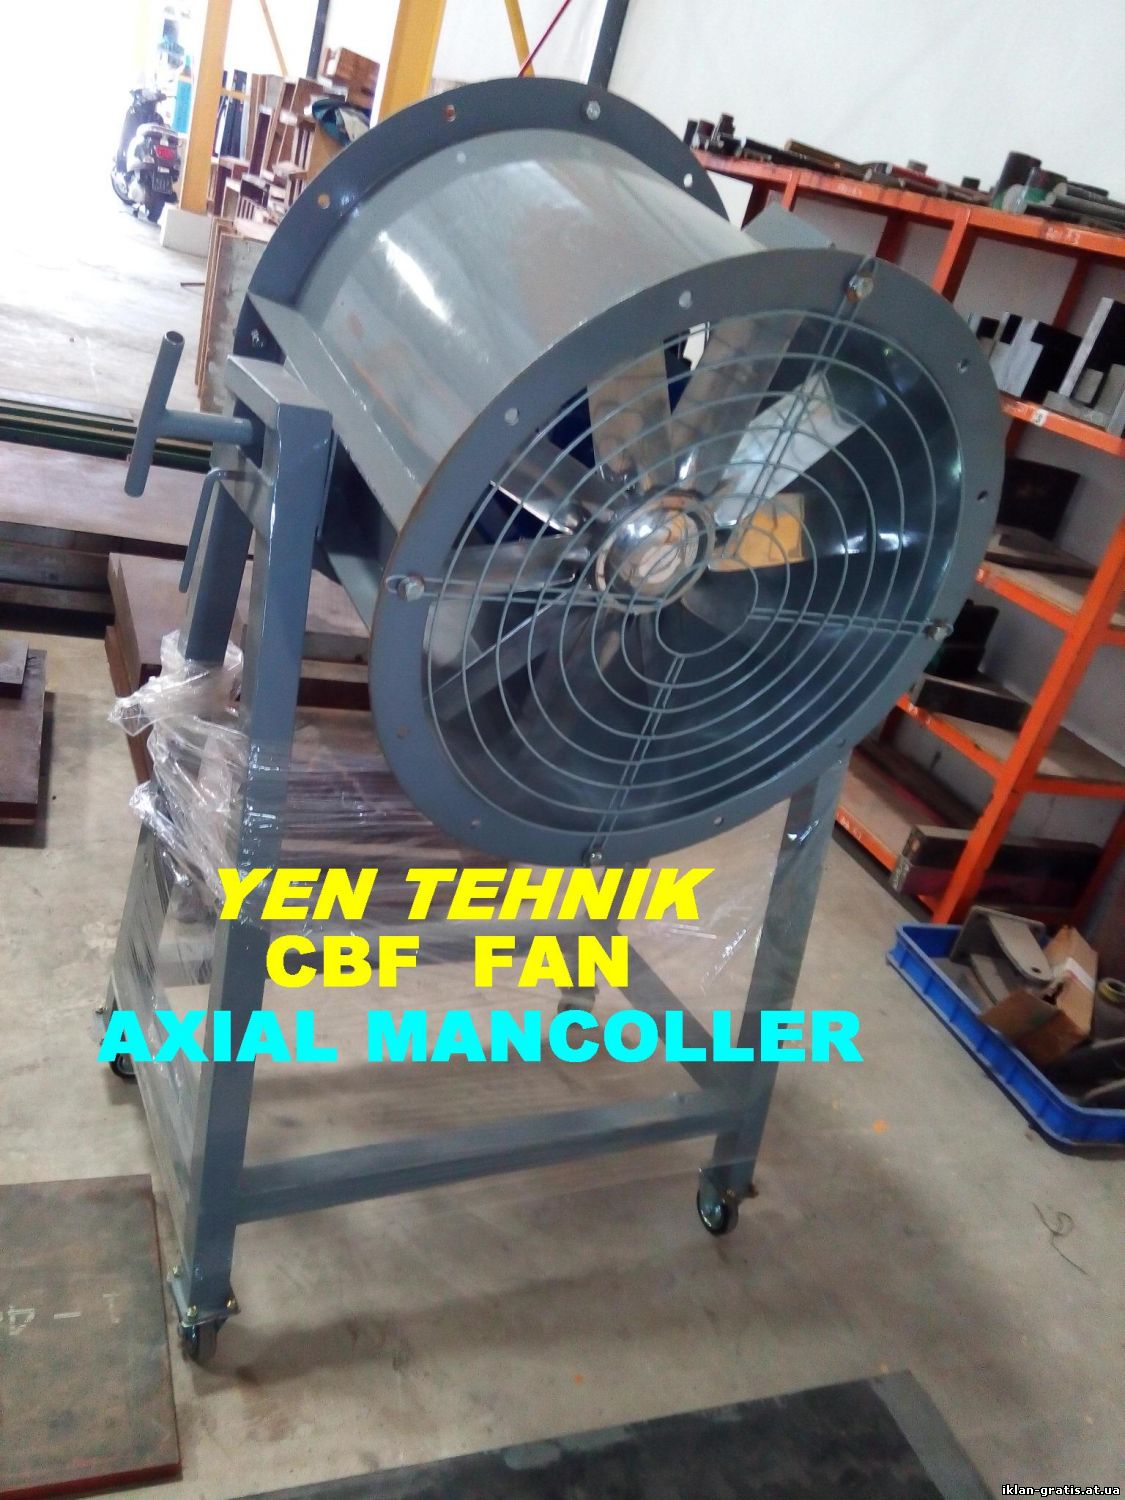 axial mancoller fan